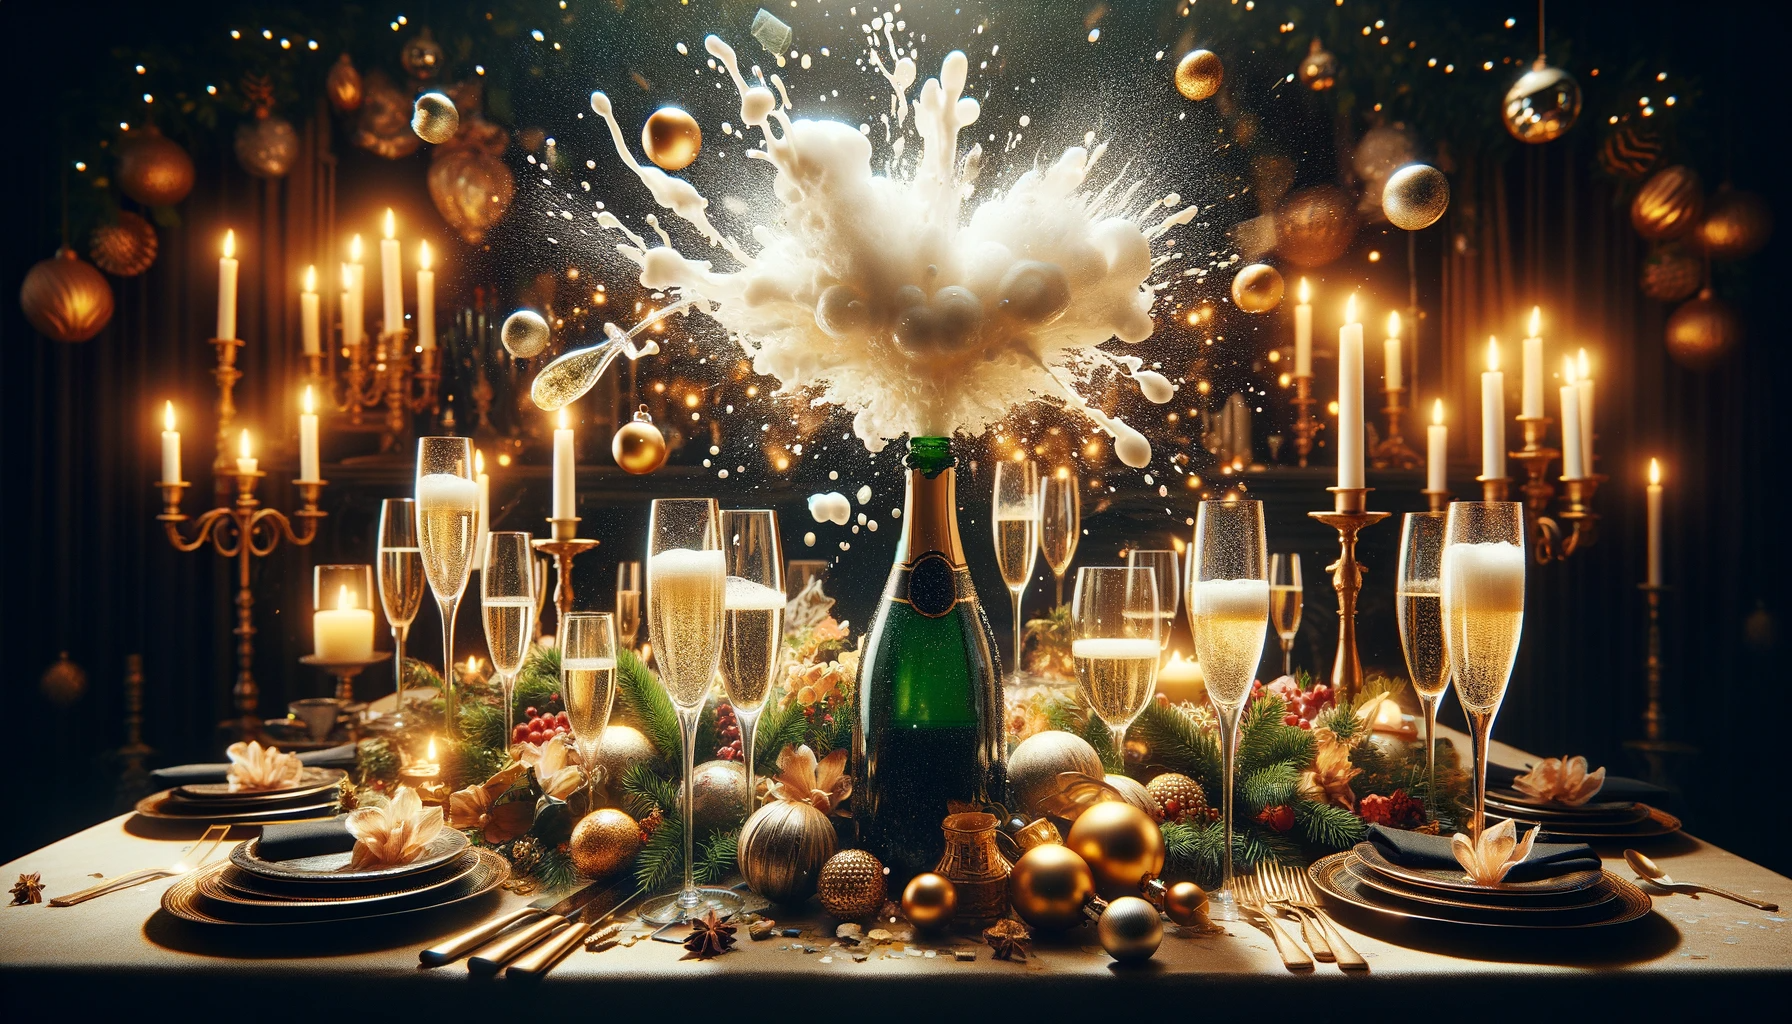 une bouteille de champagne qui explose entouré de verre sur une table festive